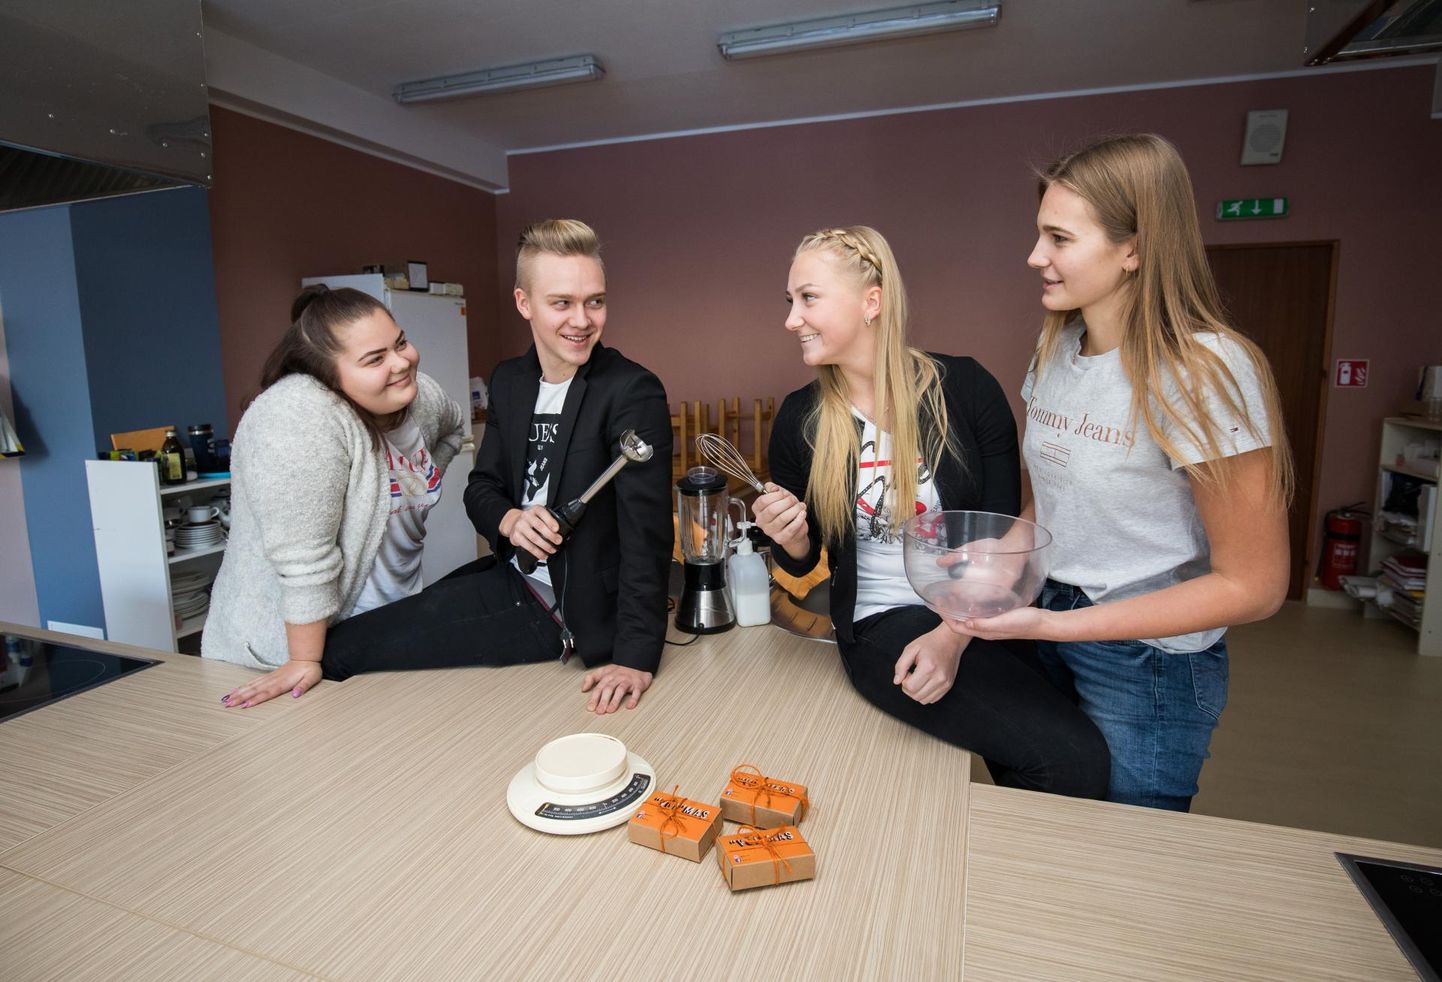 Rakvere reaalgümnaasiumi noored (vasakult) Jolanda Pikerpõld, Romi Aros, Matilde-Marie Loorits ja Liis Laigu tegutsevad õpilasfirmas “Või”mas ning valmistavad maitsevõid.